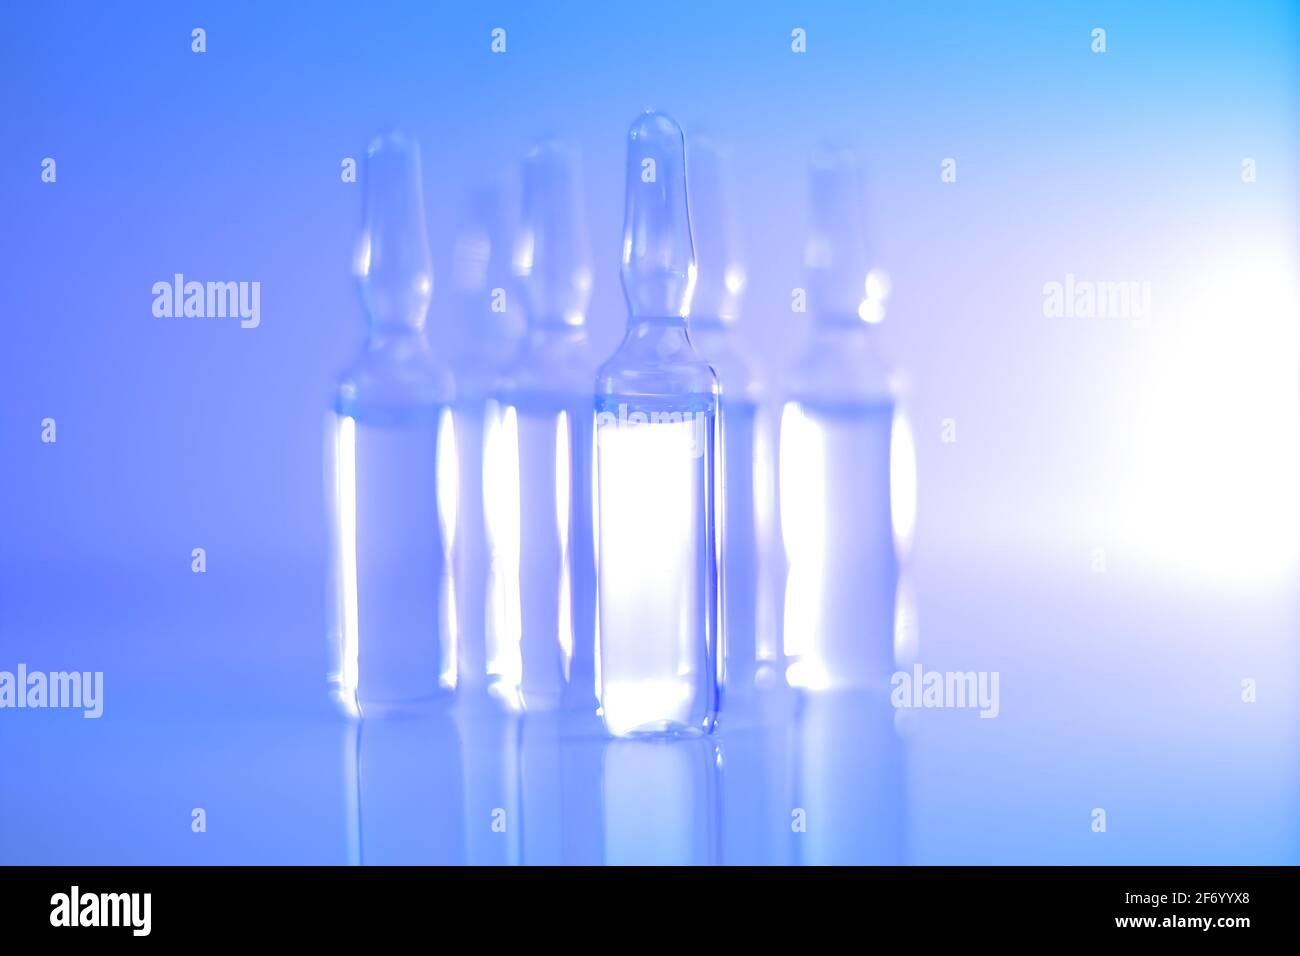 Medizin und Pharmakologie.Biotechnologie und Wissenschaft. Transparente Ampullen in hellblauen und violetten Tönen gesetzt.Ampullen mit Injektionslösung Stockfoto